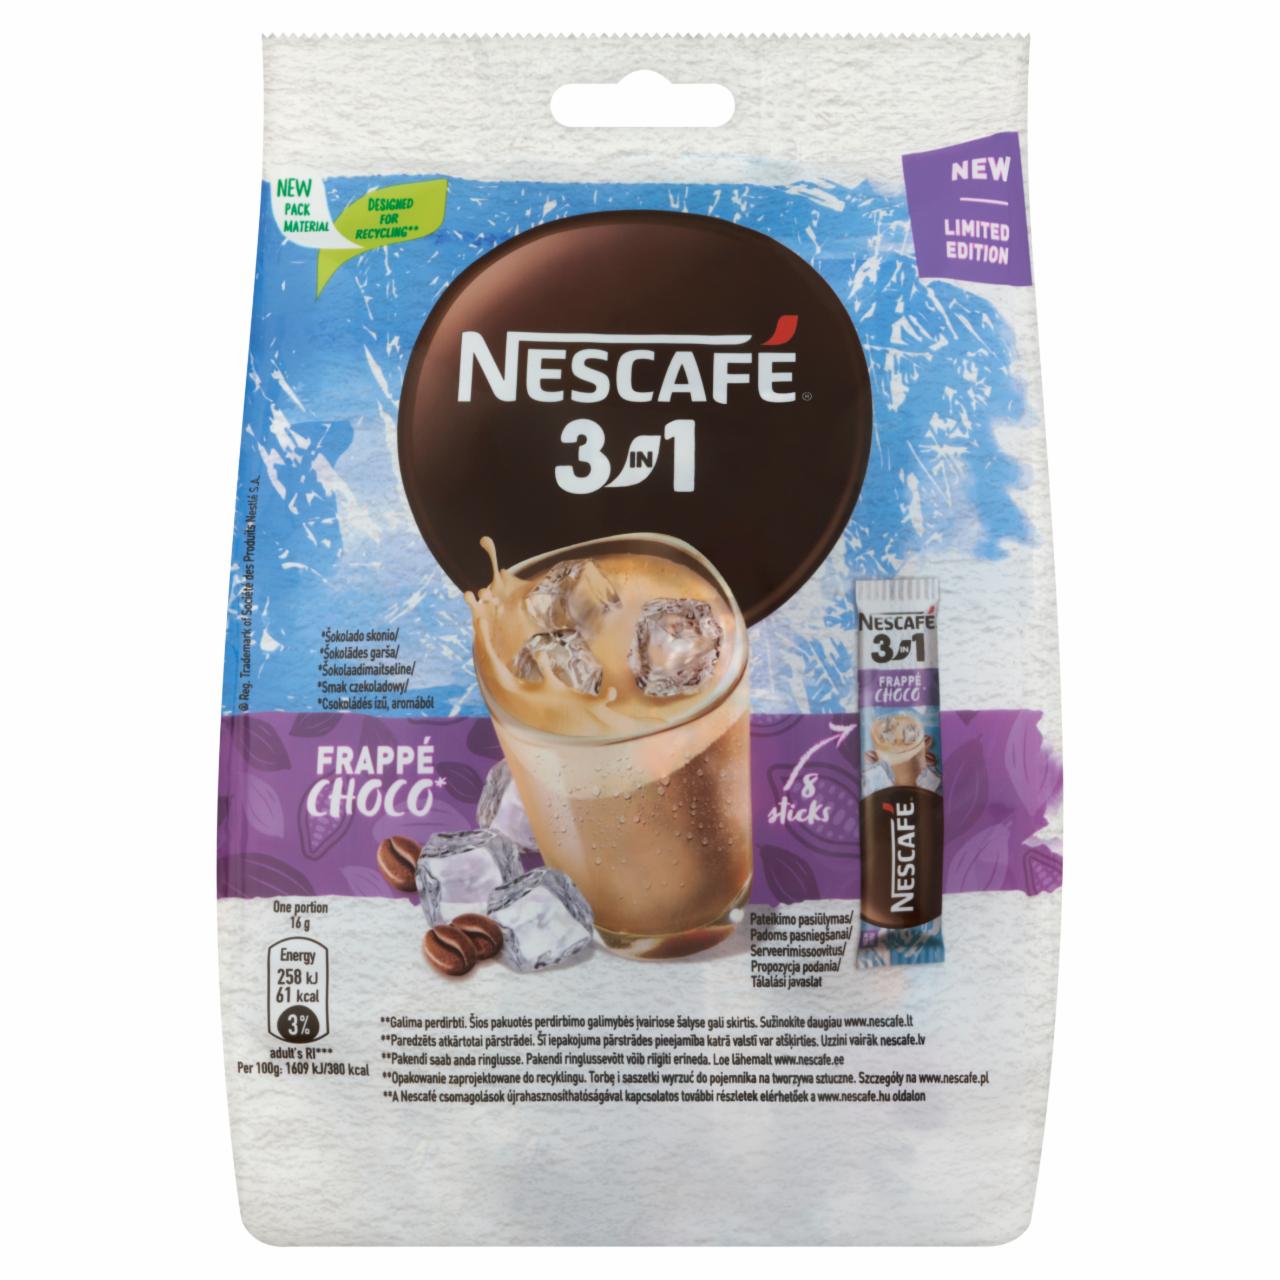 Képek - Nescafé 3in1 Frappé Choco csokoládés ízű azonnal oldódó kávéspecialitás 8 x 16 g (128 g)